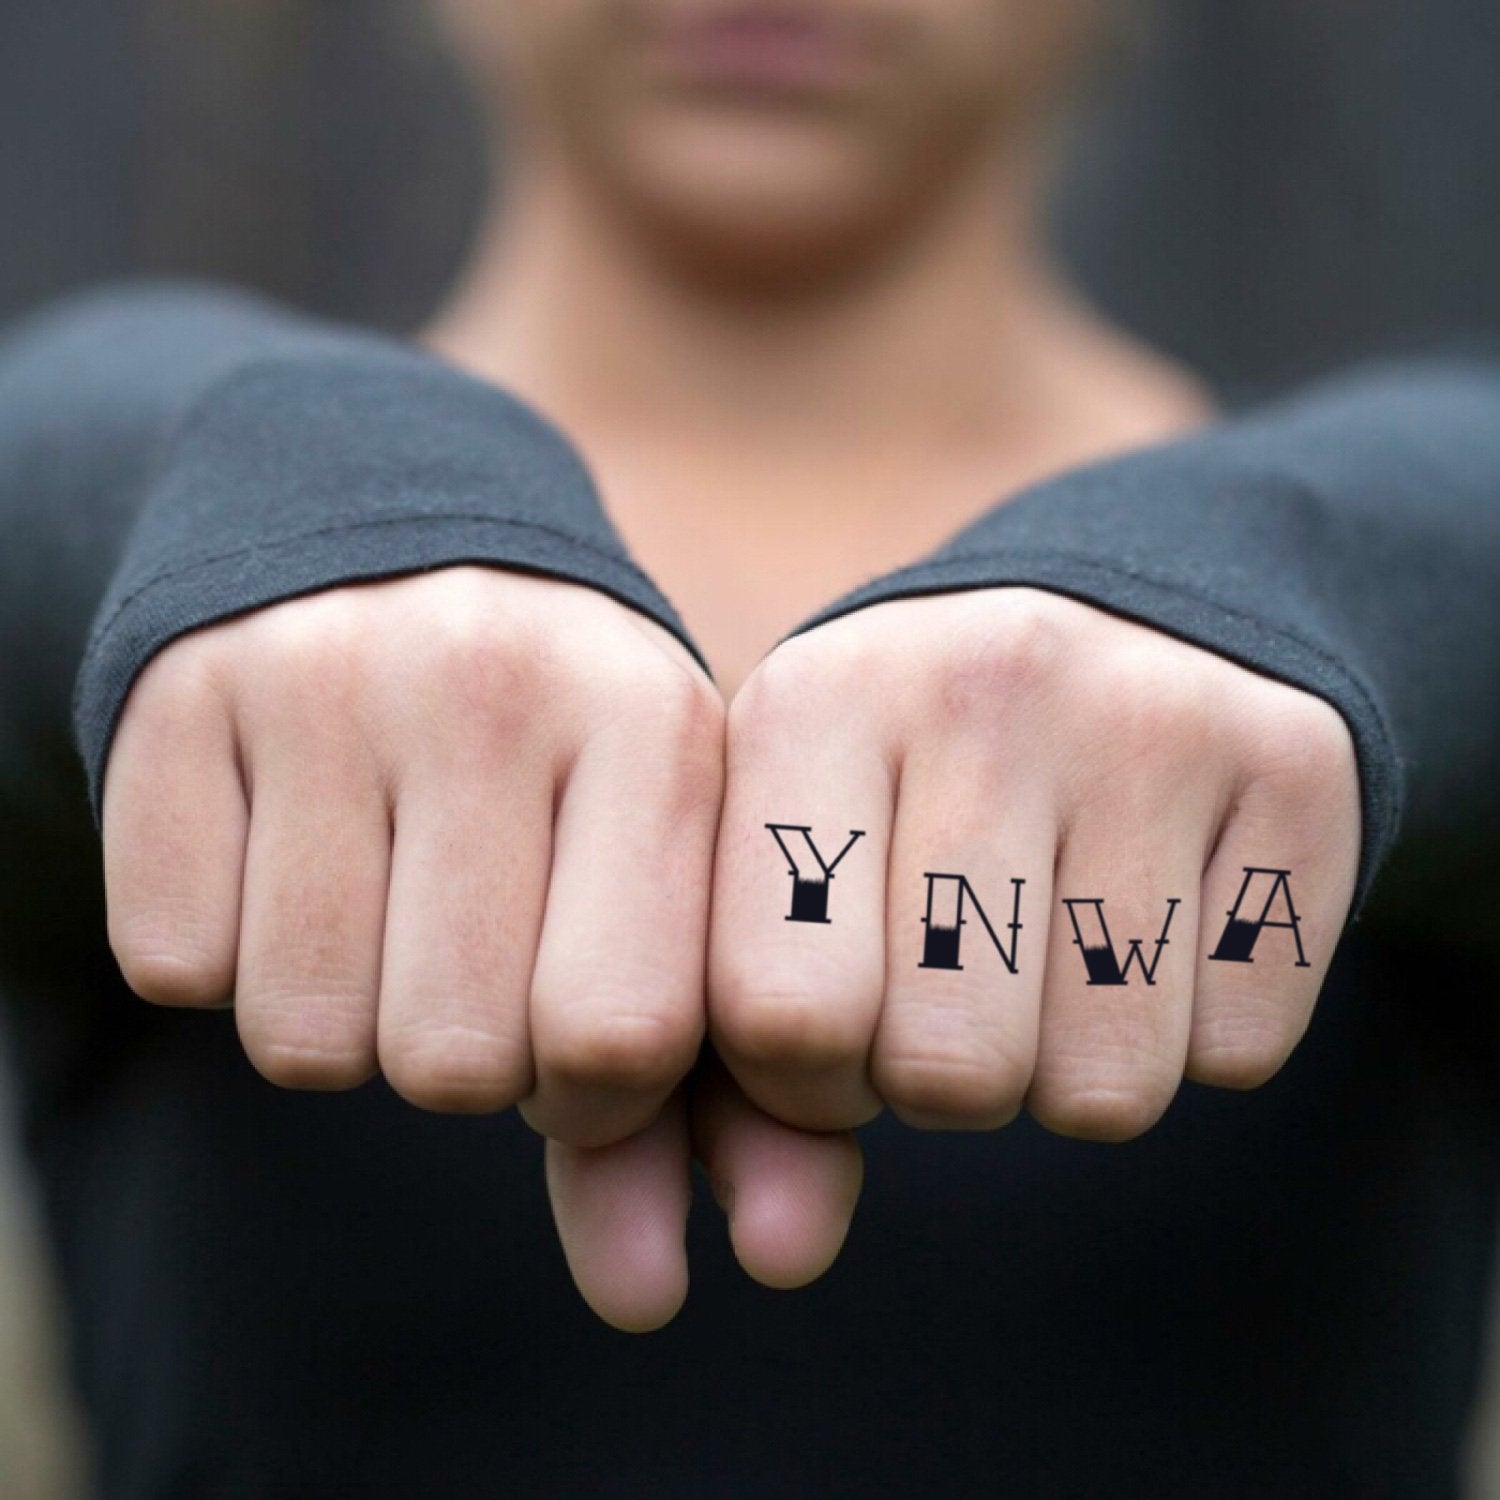 Đừng bỏ lỡ cơ hội sở hữu tem thời trang YNWA tạm thời để thể hiện tình yêu đối với Liverpool FC. Tem thời YNWA mang đến vẻ đẹp tinh tế và thanh lịch cho bất kỳ bộ trang phục nào. Hãy trang trí cho bản thân với những tem thời YNWA cực kỳ thời trang từ Skinnes Tattoo.